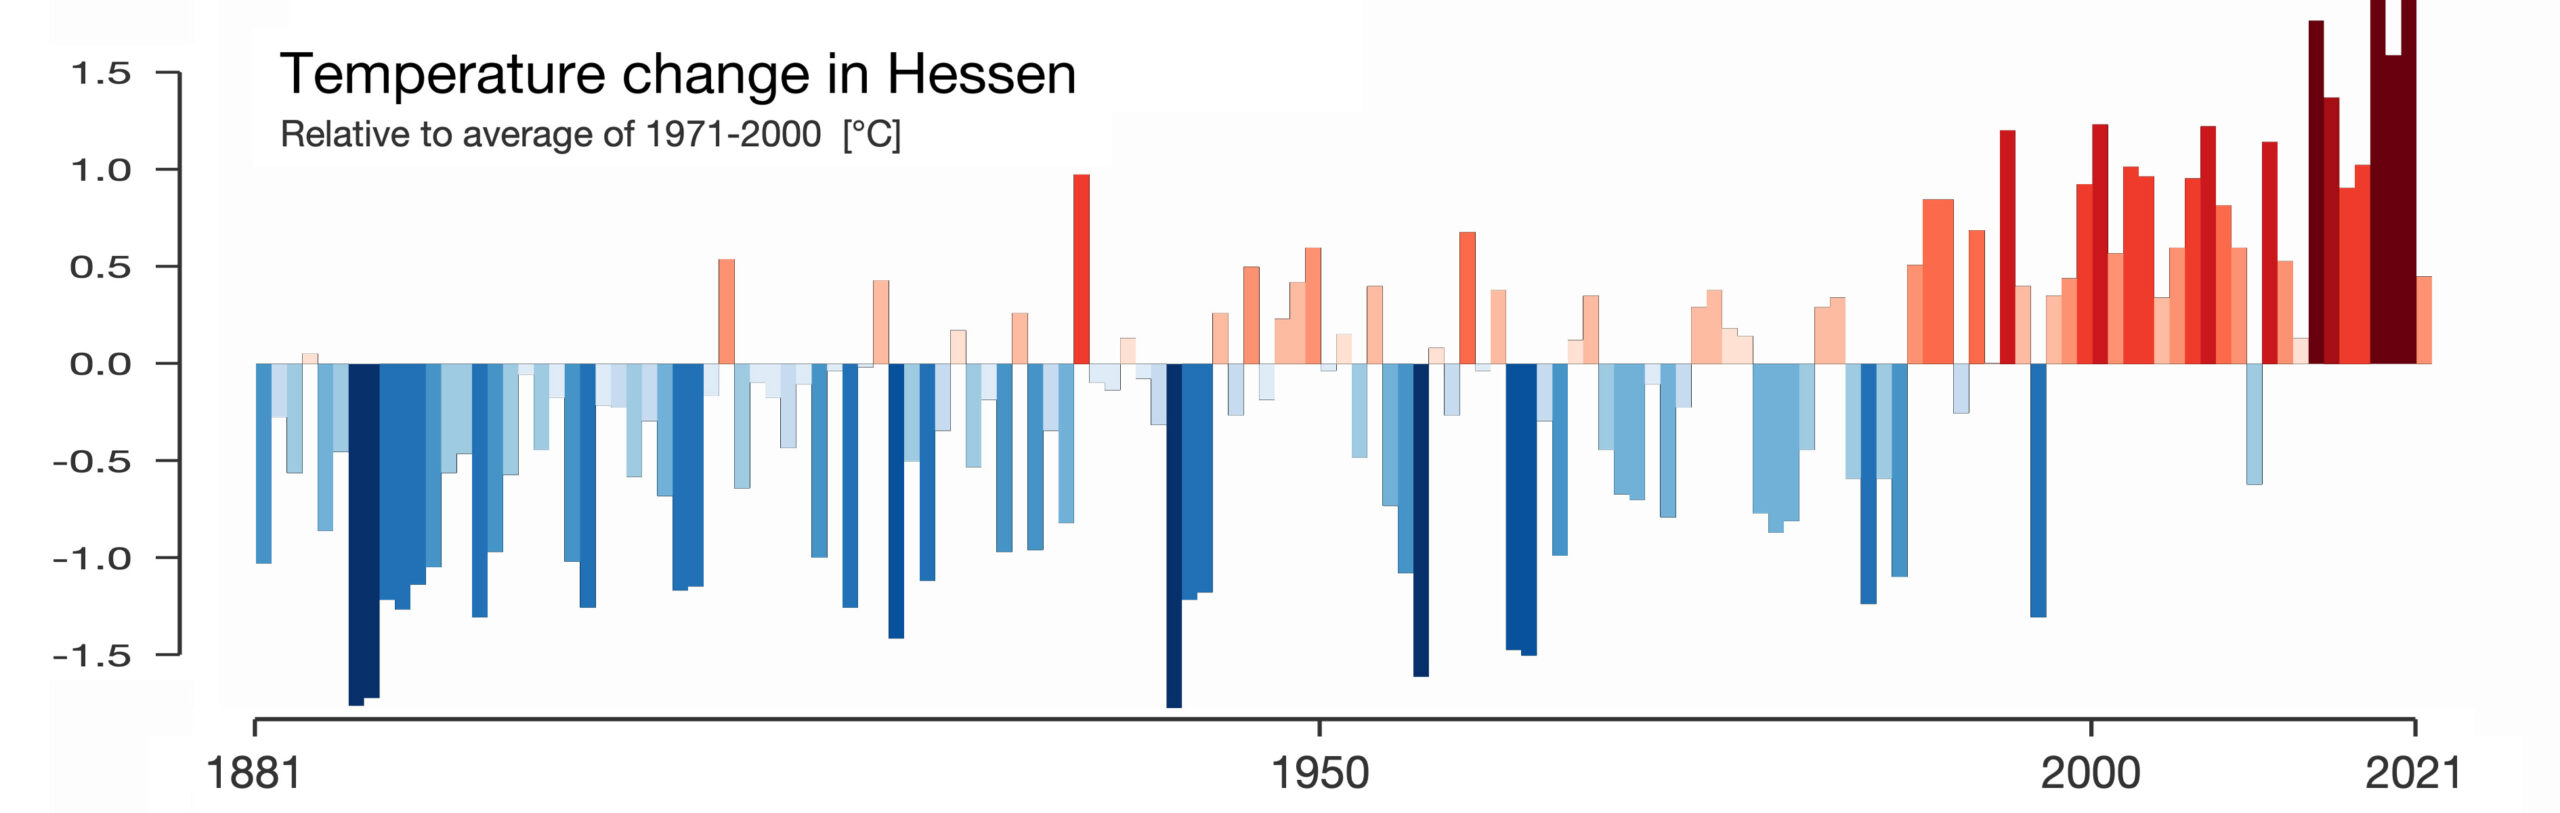 "Warming Stripes"
Temperaturanstieg in Hessen seit 1881 bis 2021. Es sind bereits über 1,6 Grad überschritten